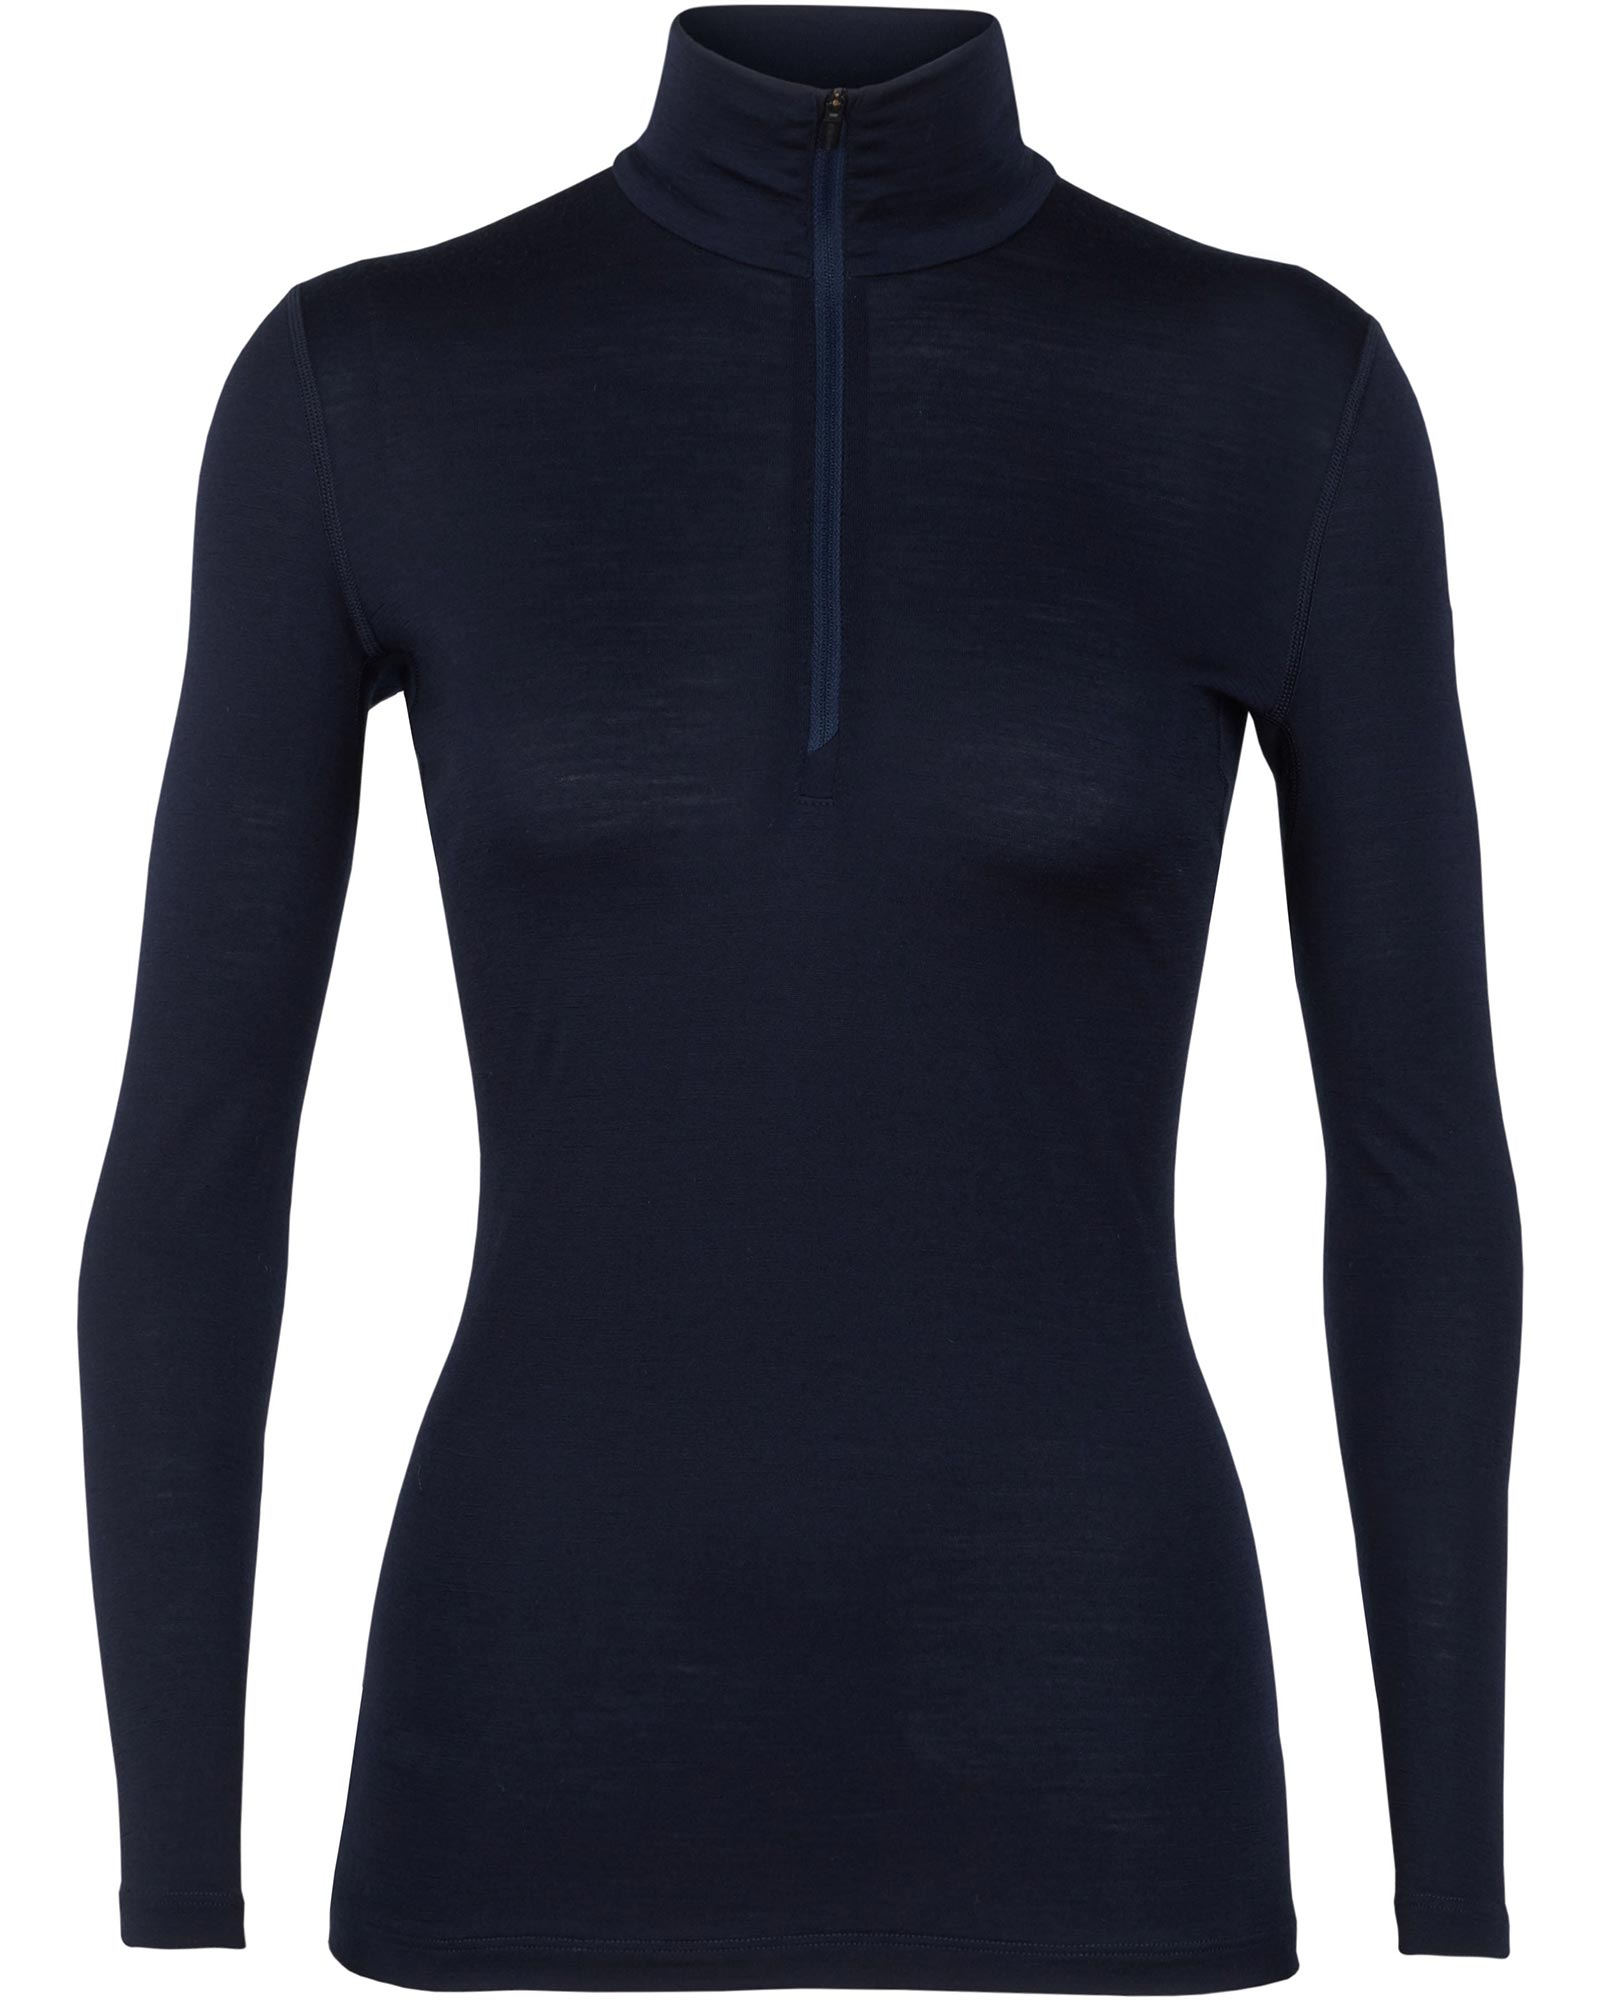 icebreaker Merino Bodyfit 200 Oasis Women’s Long Sleeve Half Zip - Midnight Navy XS